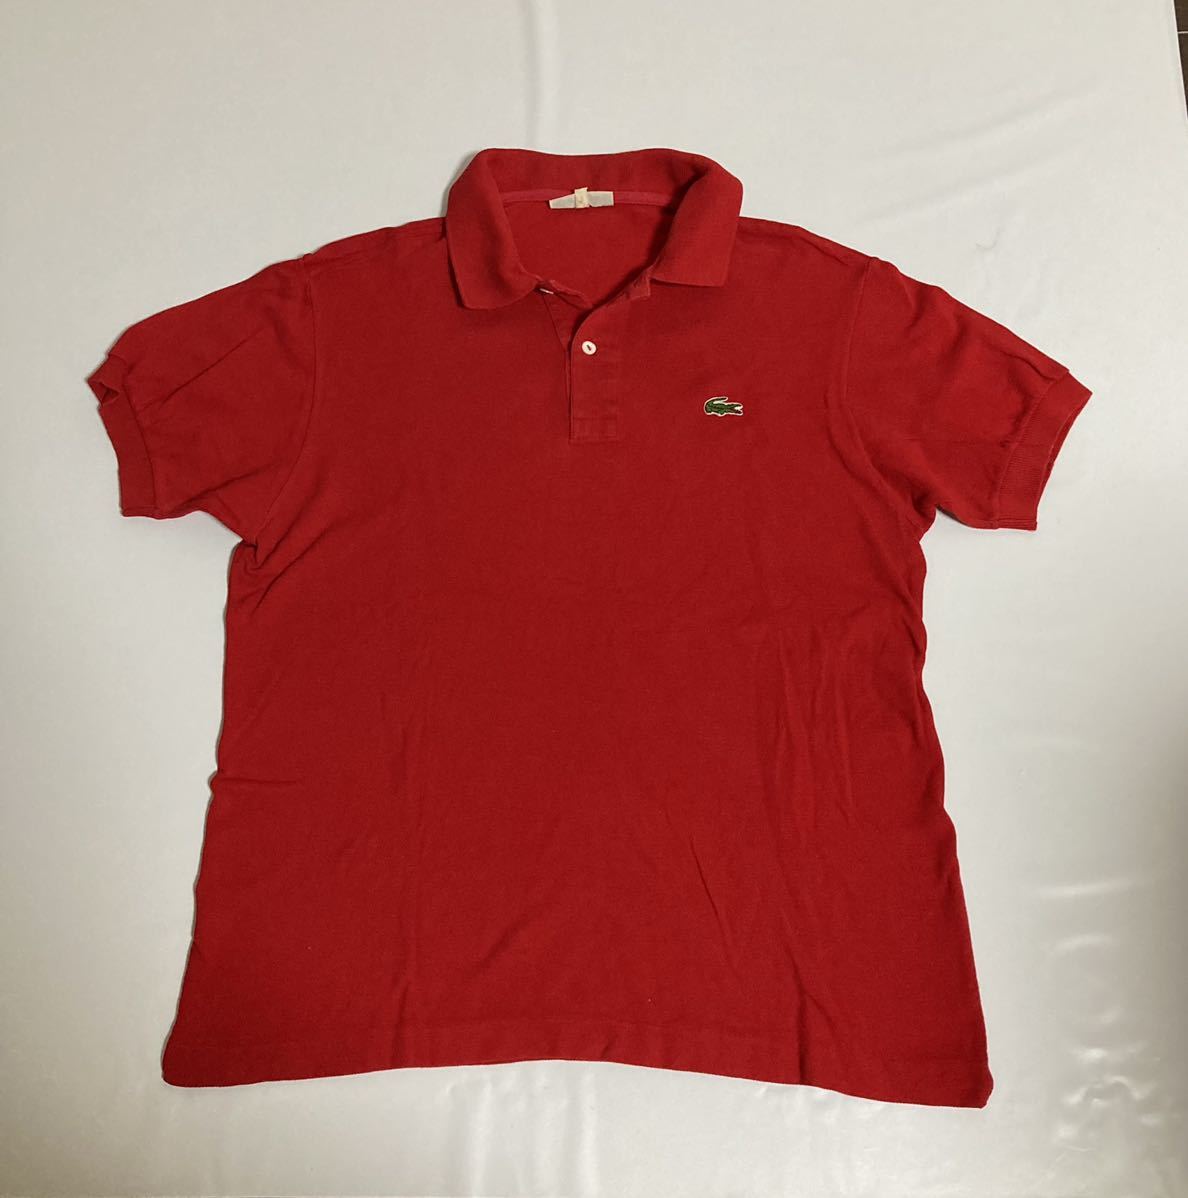 70s フランス製 ラコステ 鹿の子 ポロシャツ メンズ フレンチラコステ ビンテージ LACOSTE ヴィンテージ 70年代 レッド 赤 半袖シャツ